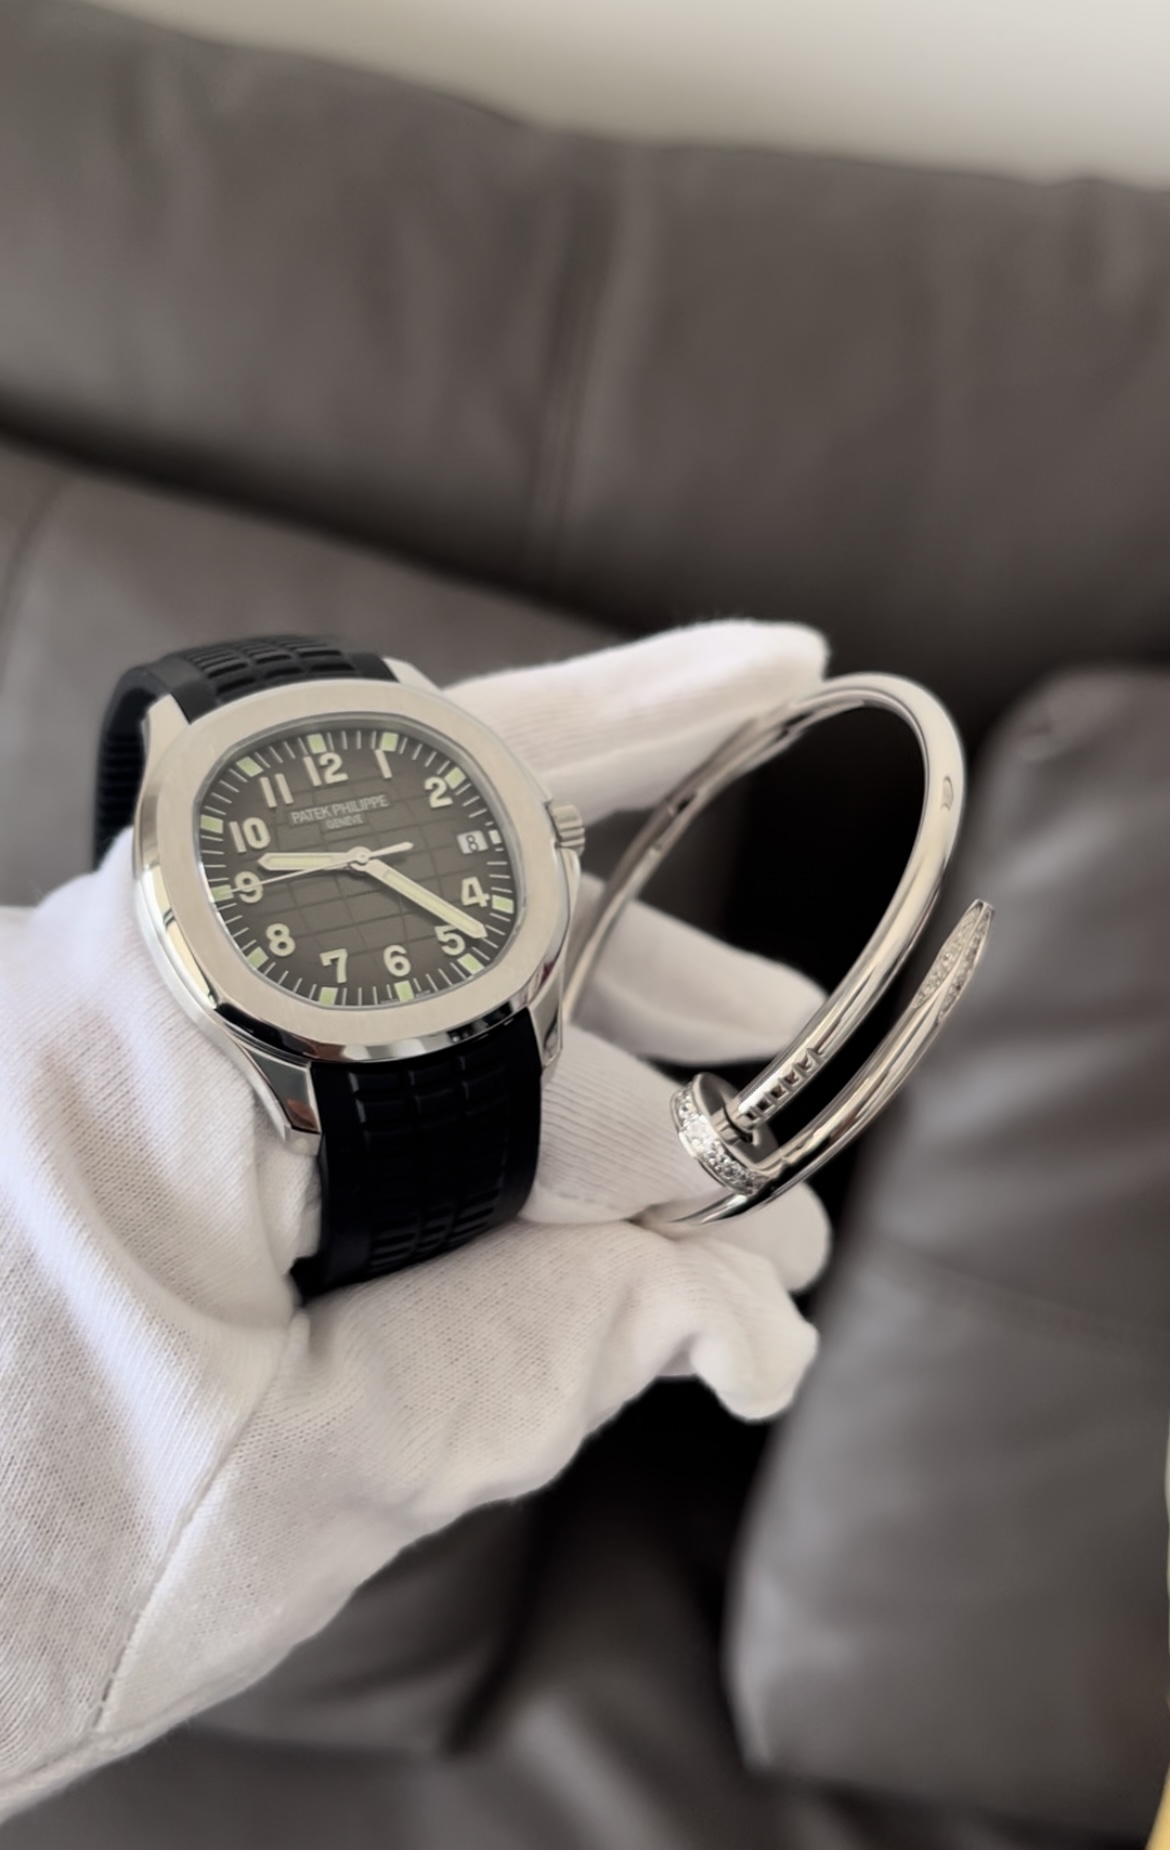 Patek Philippe Aquanaut Watches white gold 5165a and Cartier Juste un clou bracelet diamonds